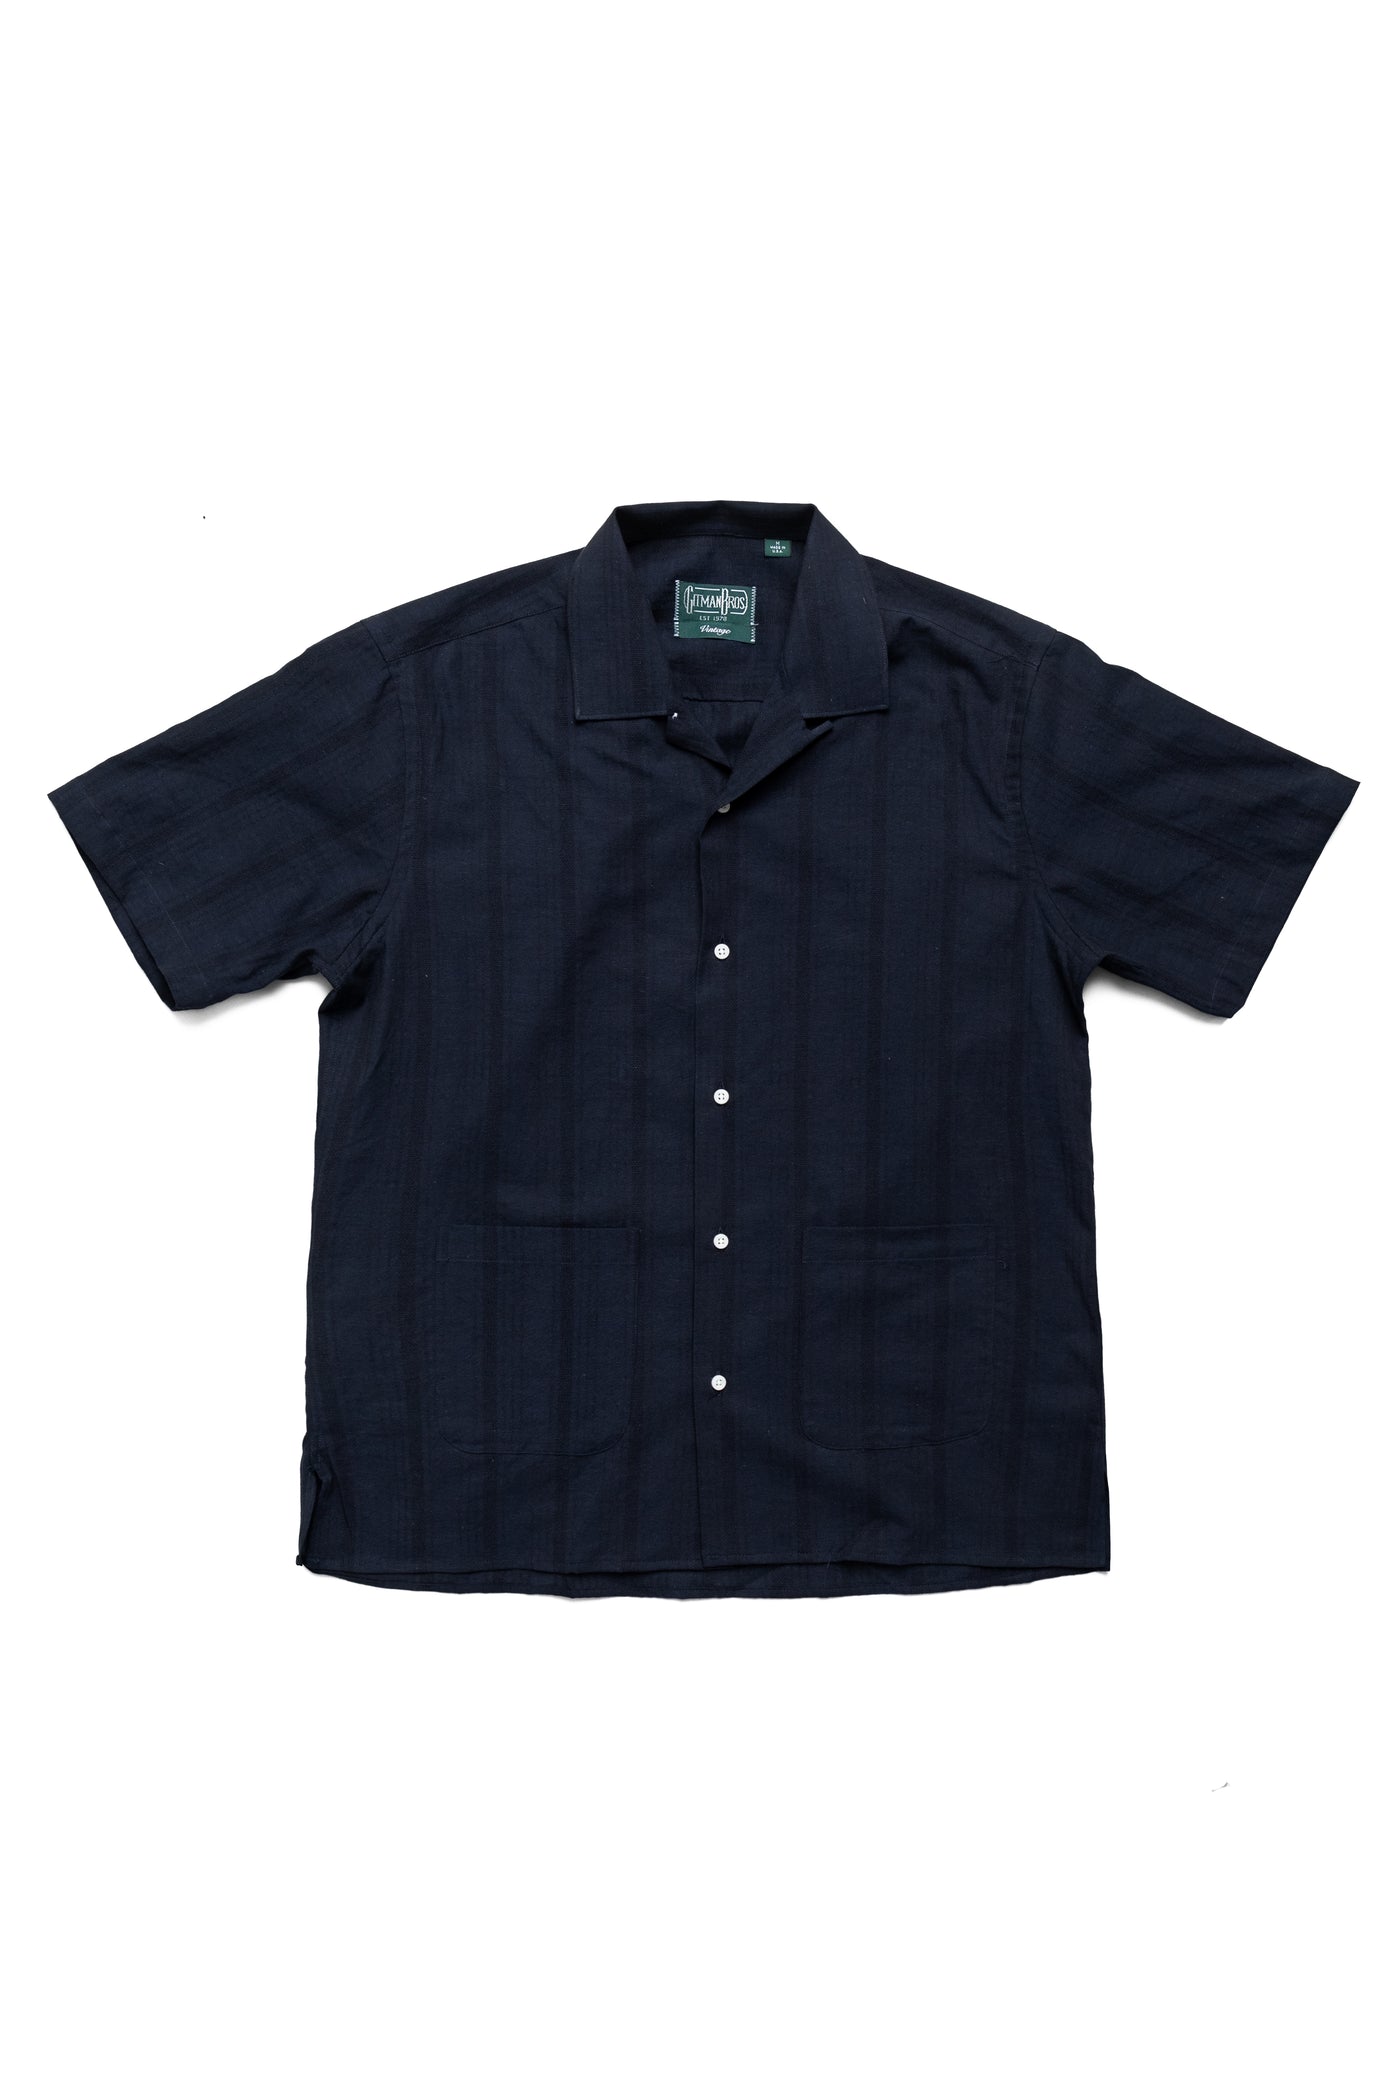 S/S Beach Shirt - Navy